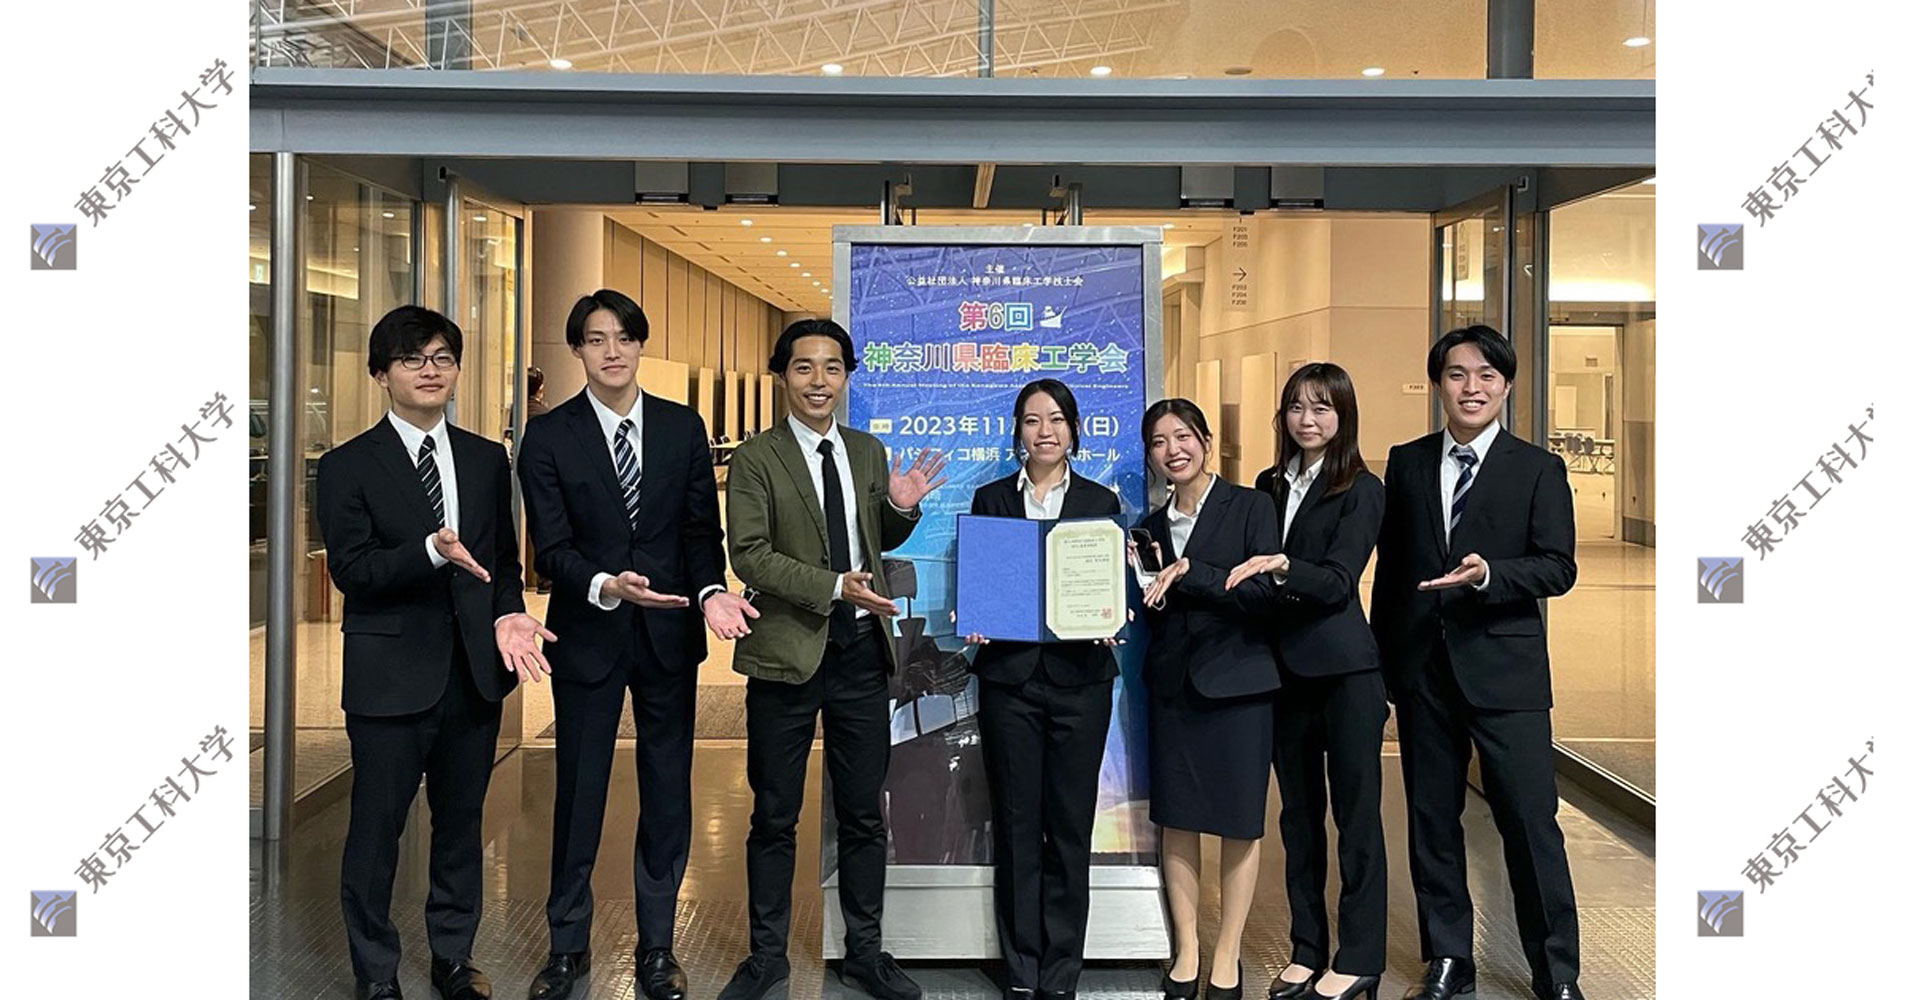 第6回神奈川県臨床工学会において医療保健学部の学生がBPA優秀演題賞を受賞